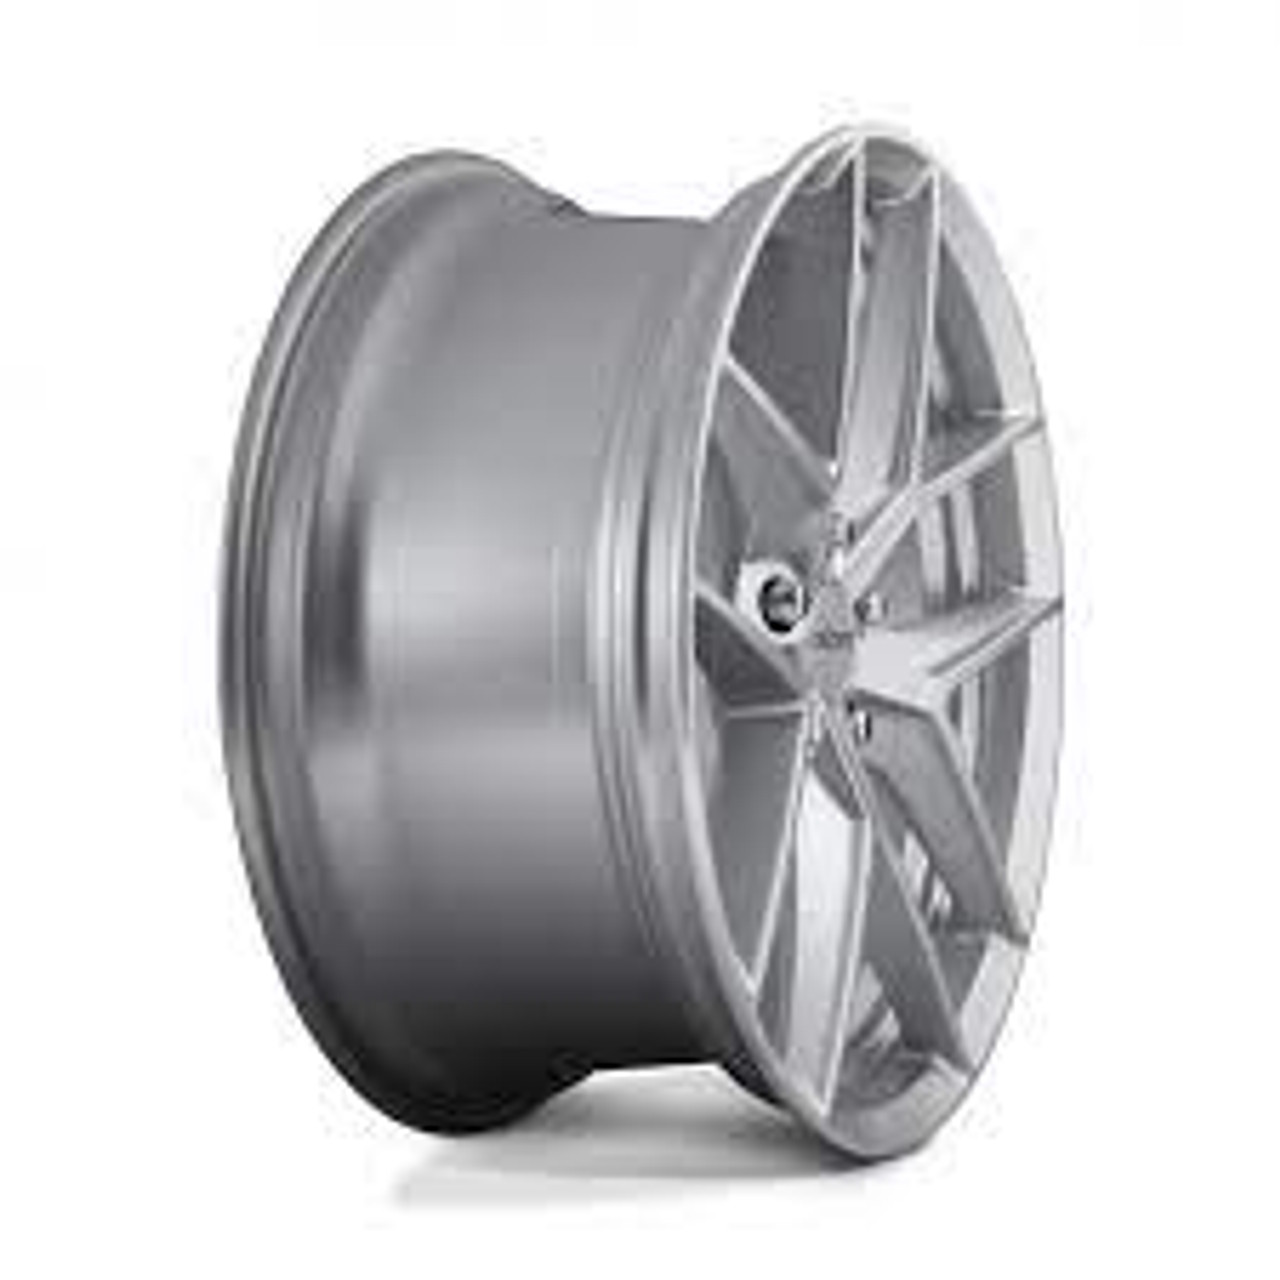 Rotiform R133 FLG Wheel 18x8.5 5x114.3 45 Offset - Gloss Silver